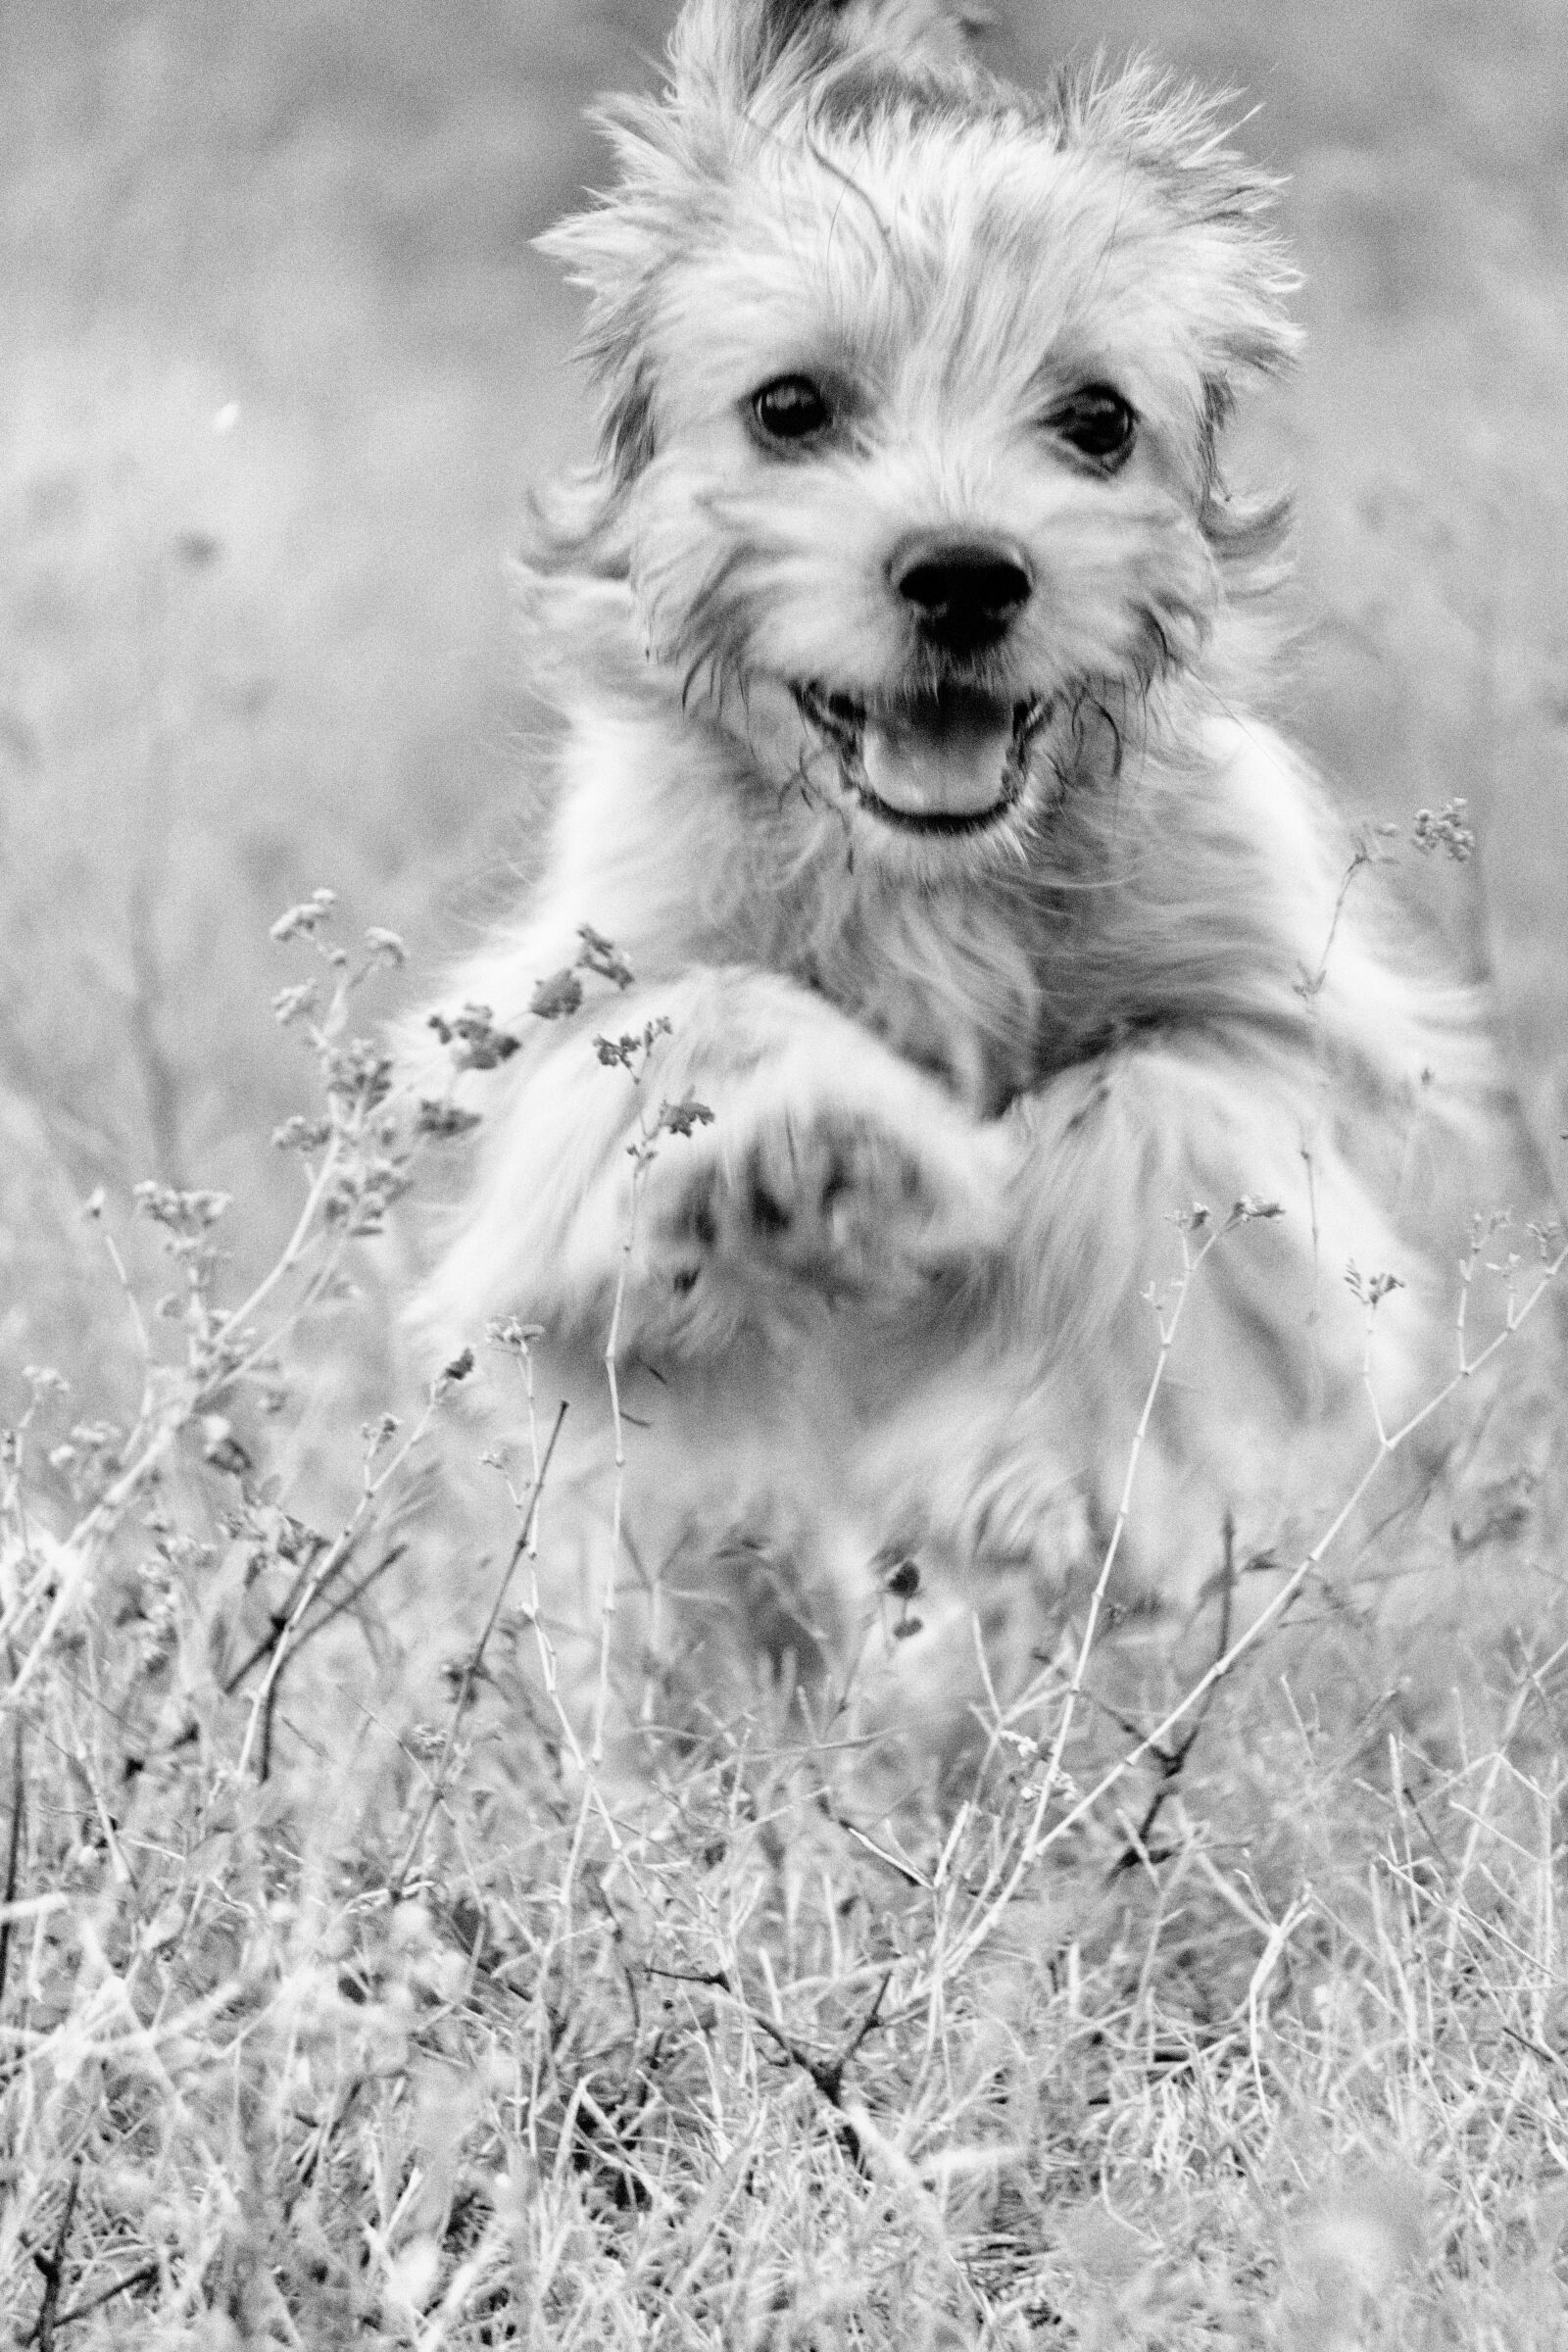 Sony a6000 sample photo. Dog, joy, happy photography